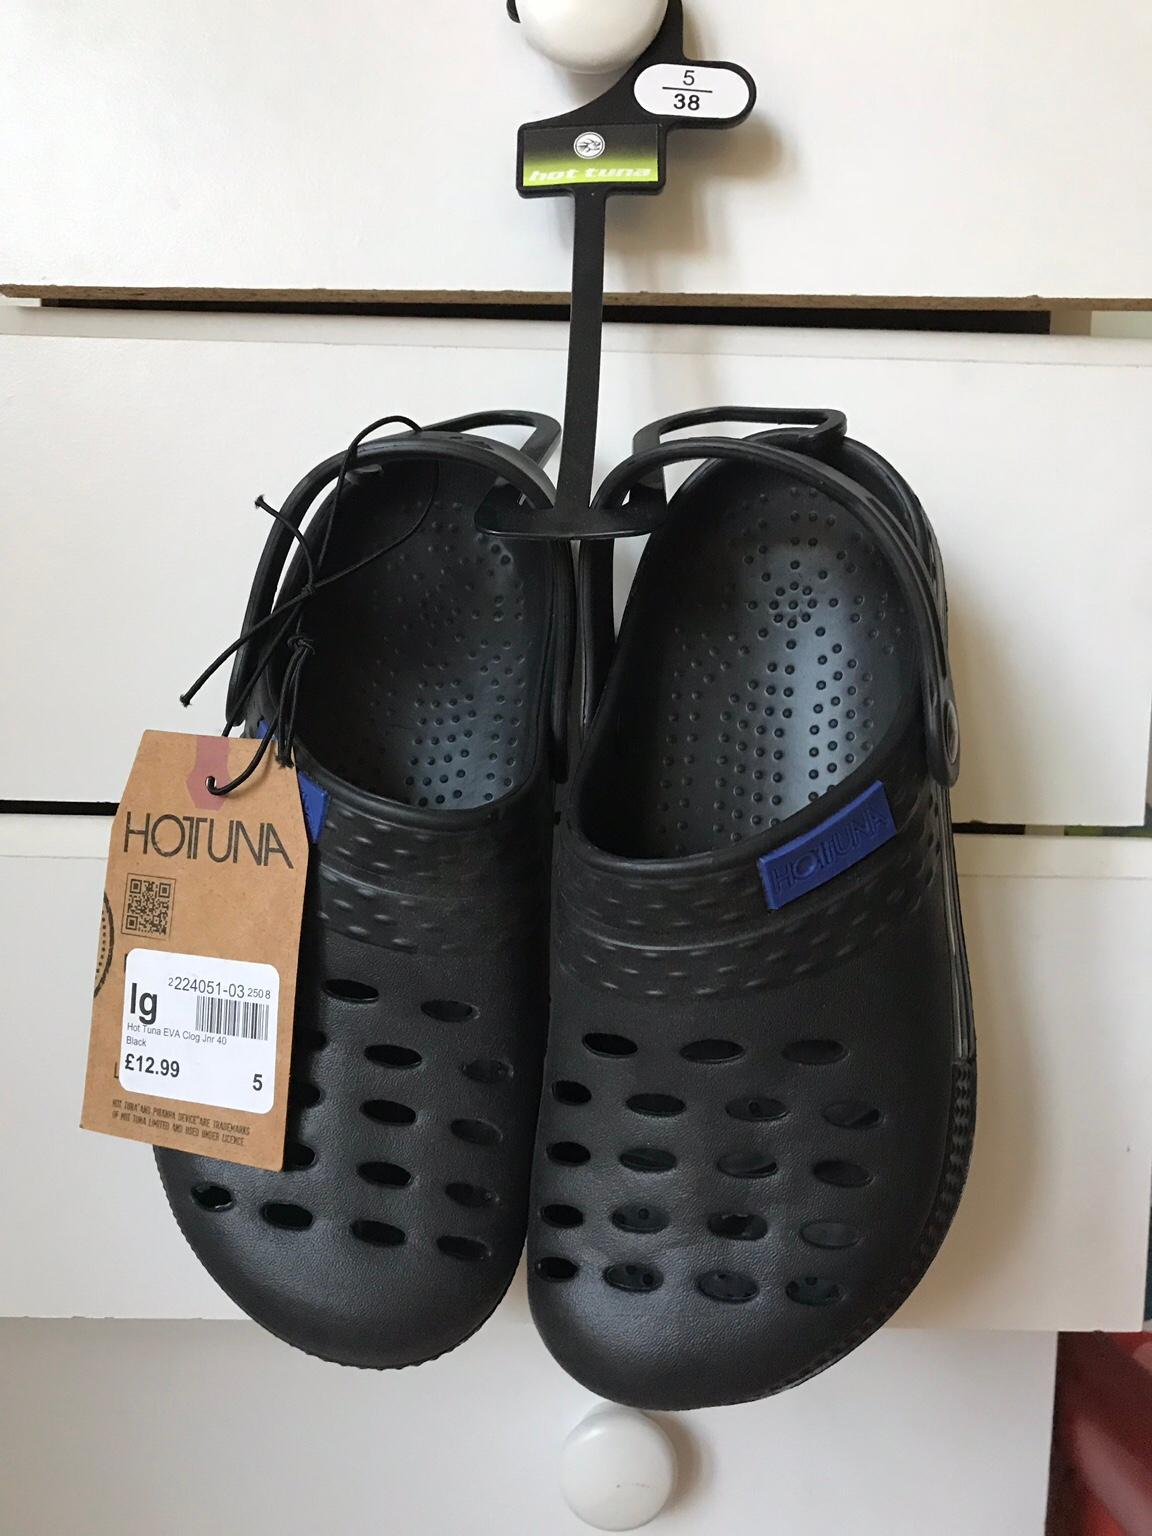 pk slippers